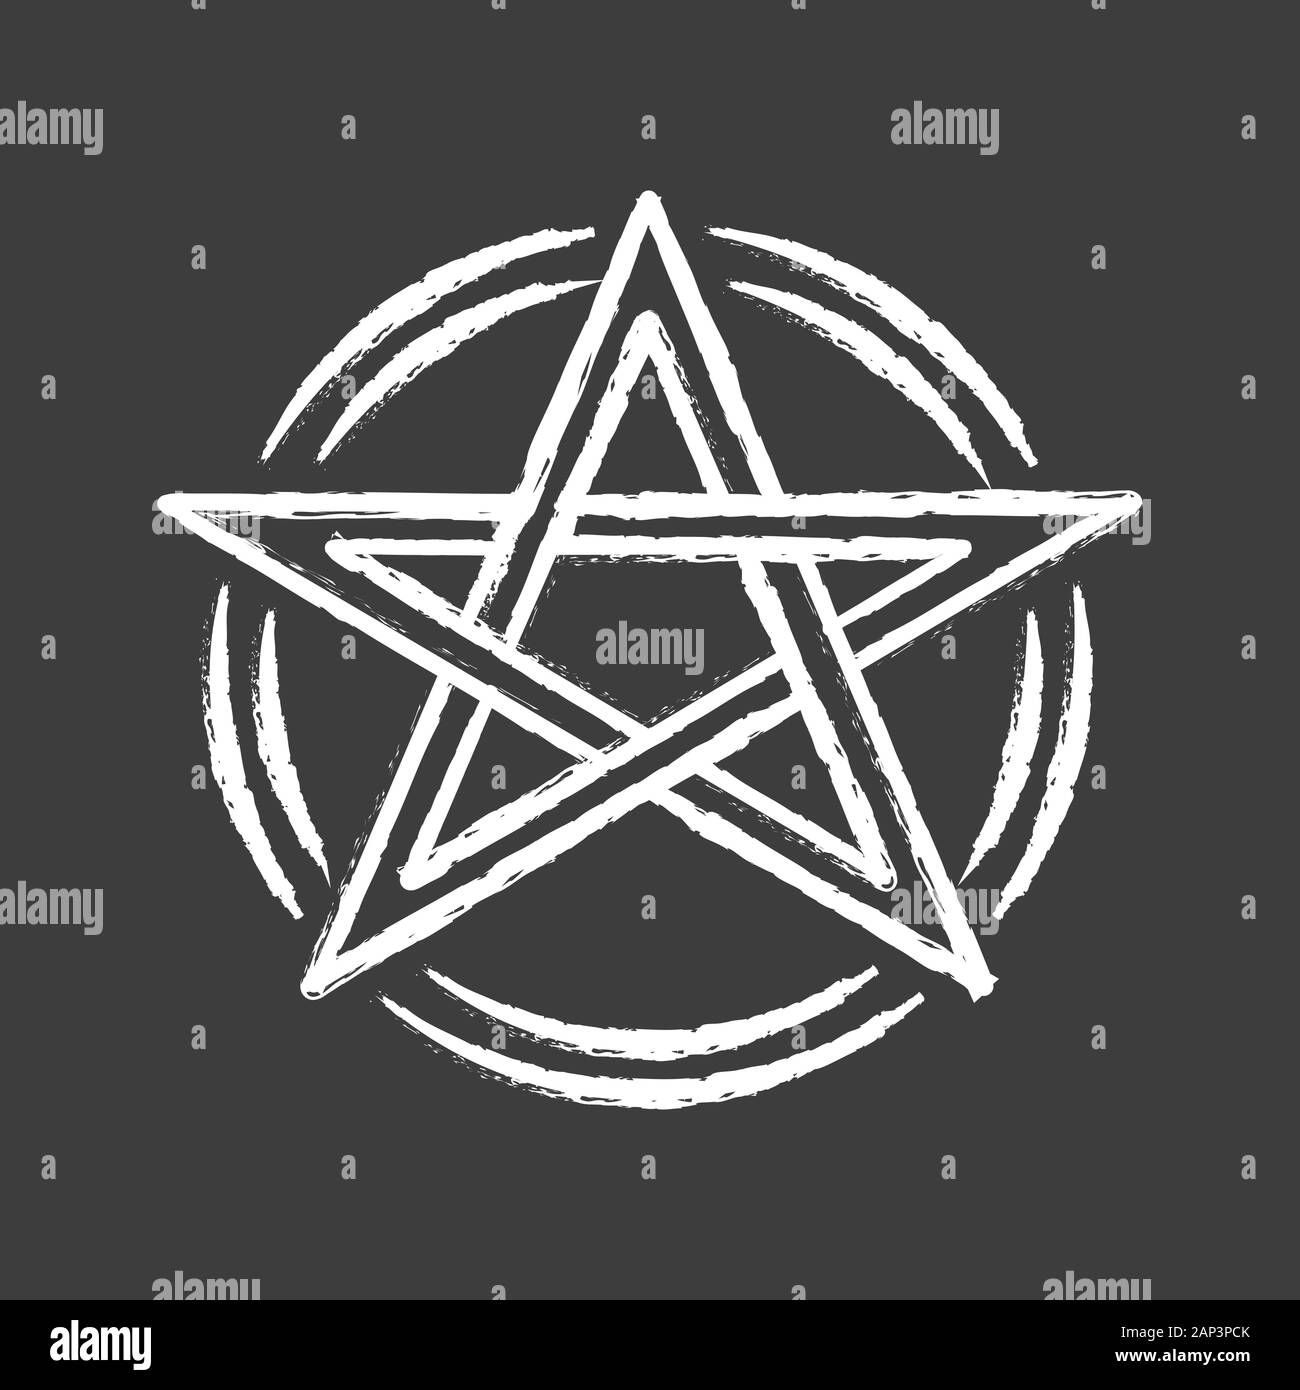 Pentagramm chalk Symbol. Okkulten ritual Pentakel. Teufel Stern. Satanische Sekte, Wicca & heidnische Symbol. Hexerei, esoterischen und teuflische unterzeichnen. Mystic heptagra Stock Vektor